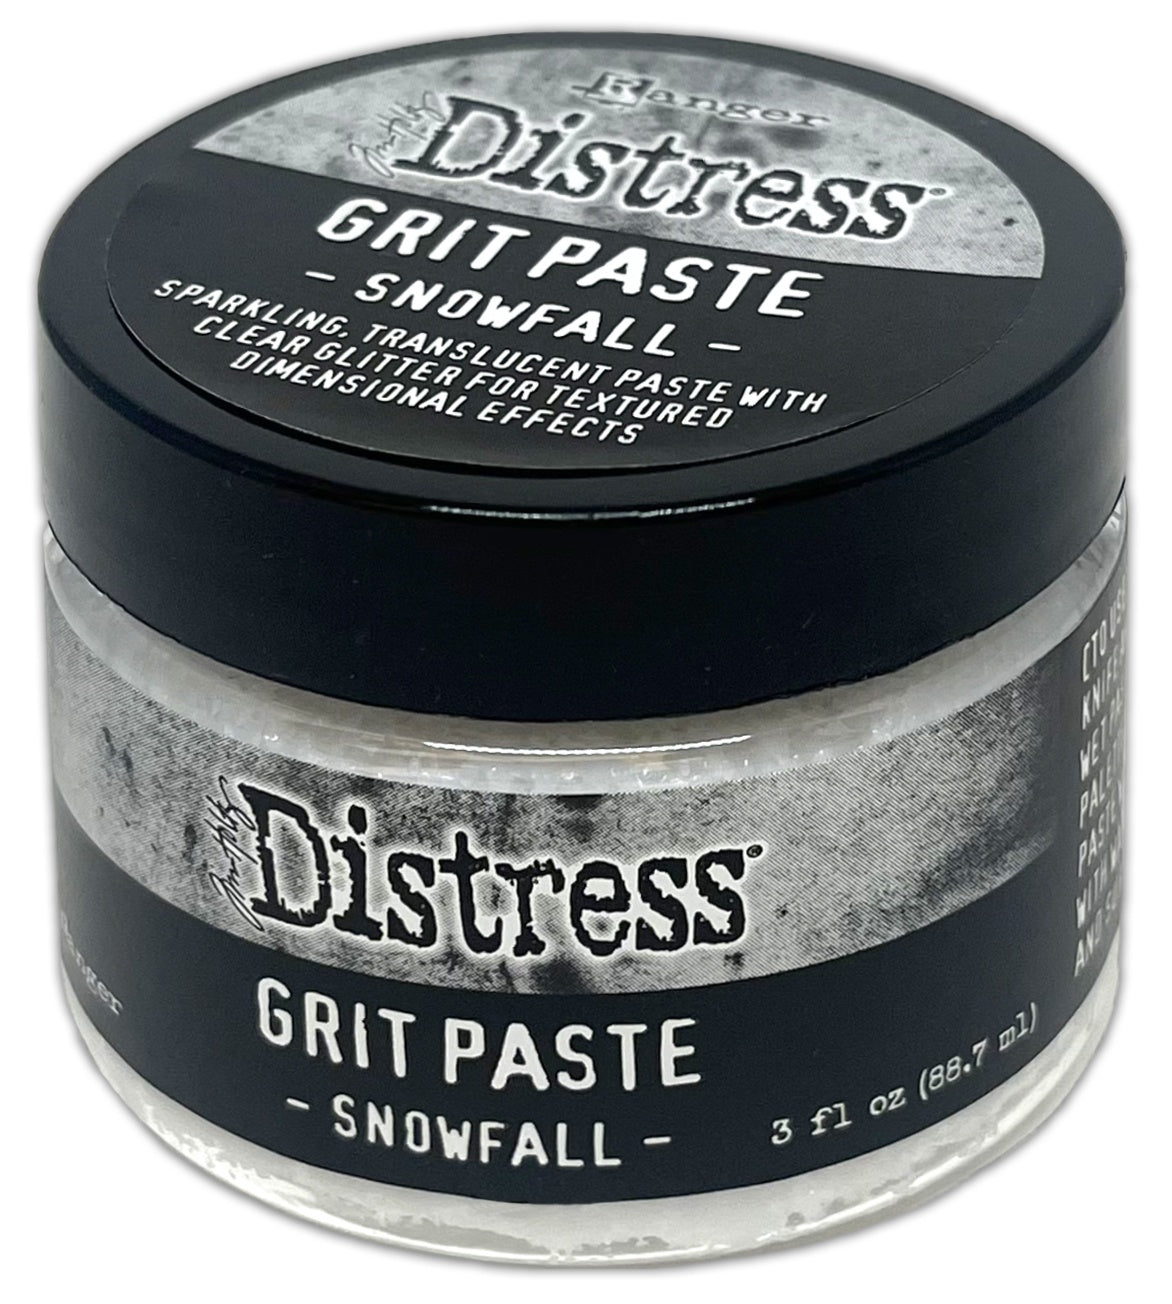 Snowfall - Distress Grit Paste 3oz - Tim Holtz